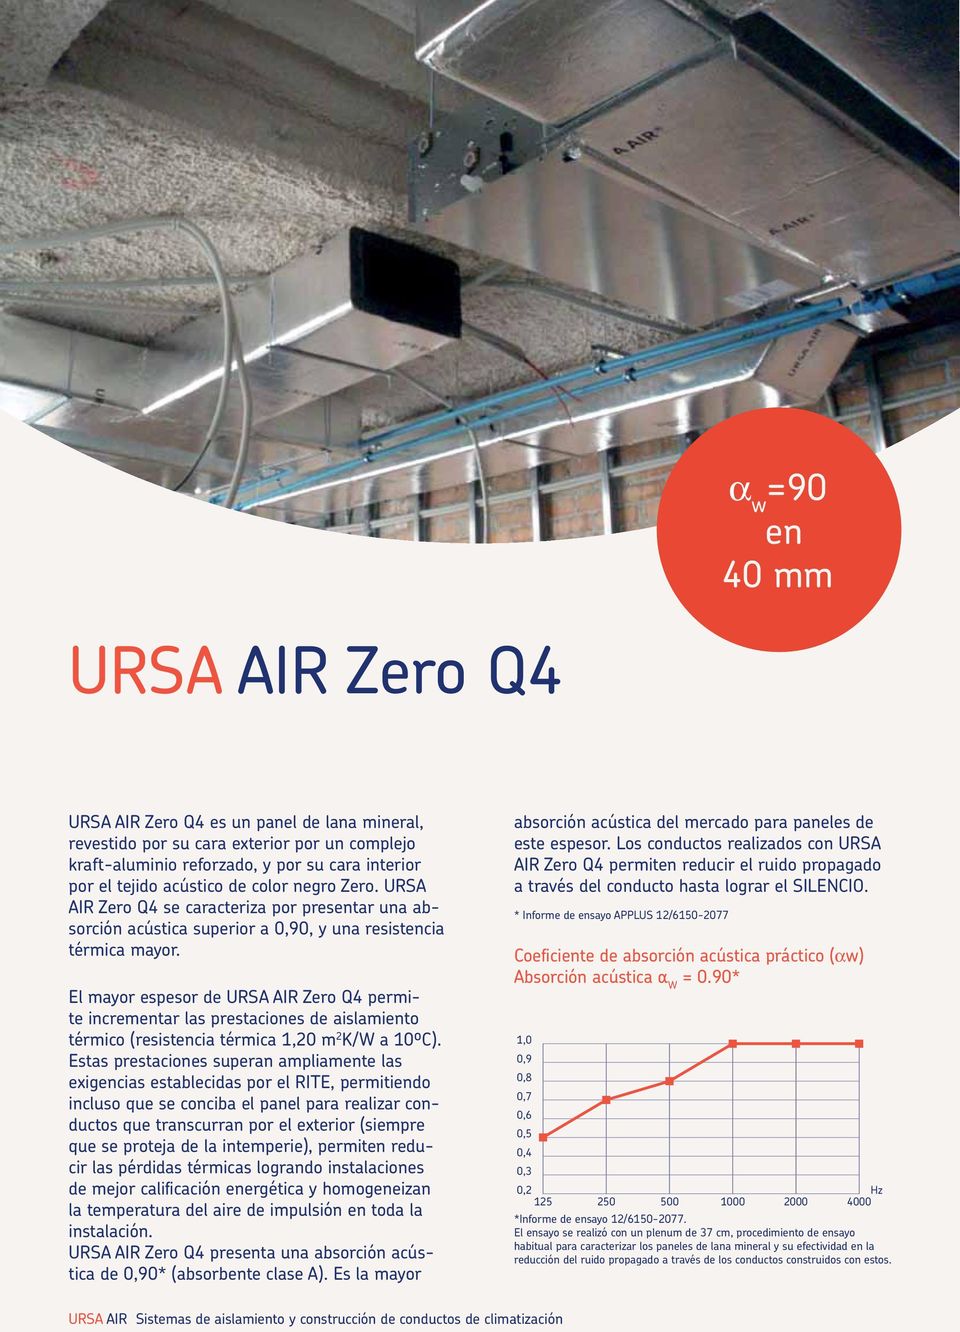 El mayor espesor de URSA AIR Zero Q4 permite incrementar las prestaciones de aislamiento térmico (resistencia térmica 1,20 m 2 K/W a 10ºC).